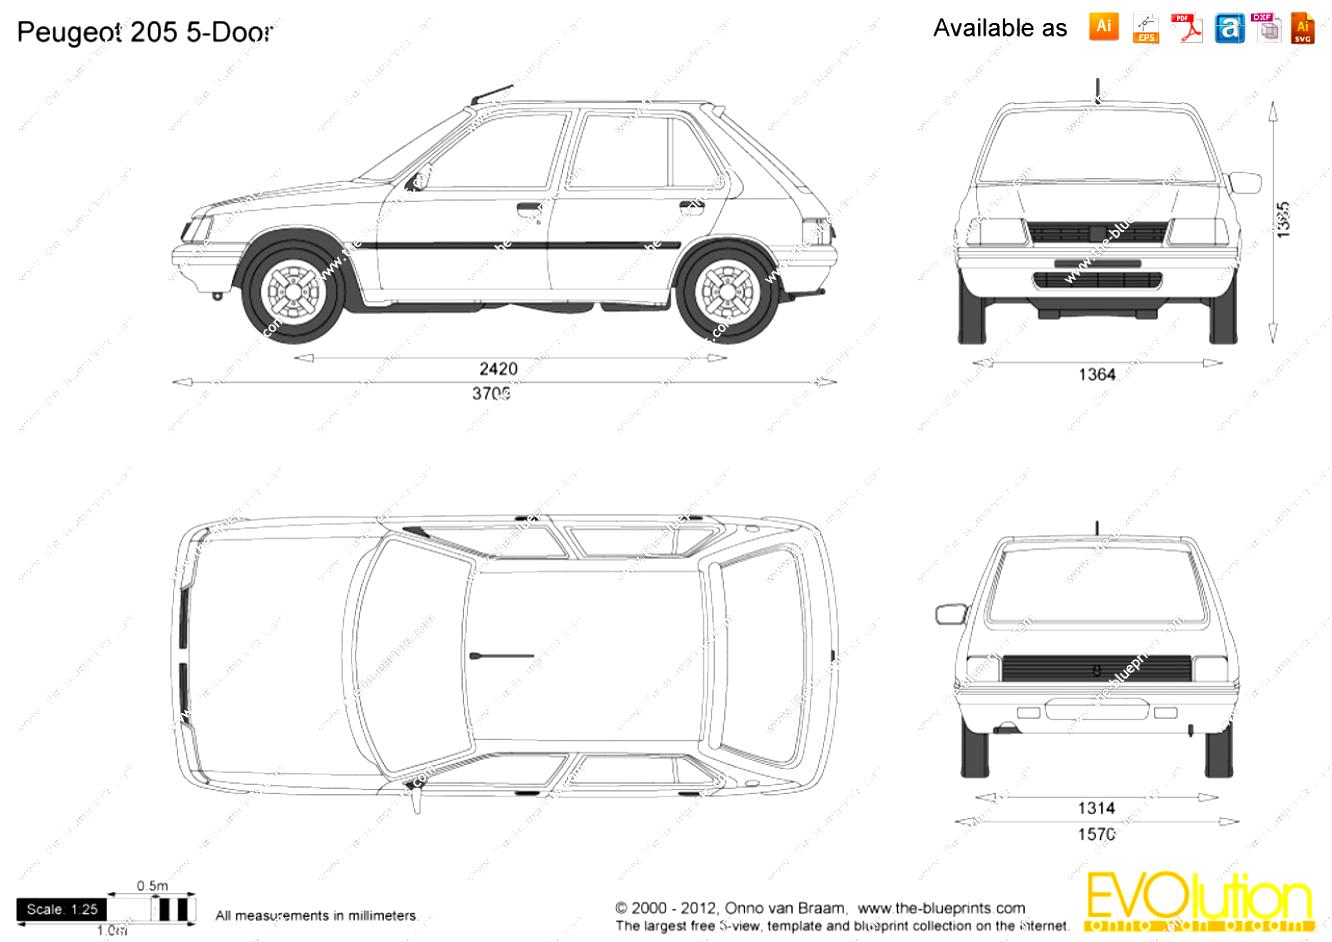 Peugeot 308 - 5 Doors 2013 #33